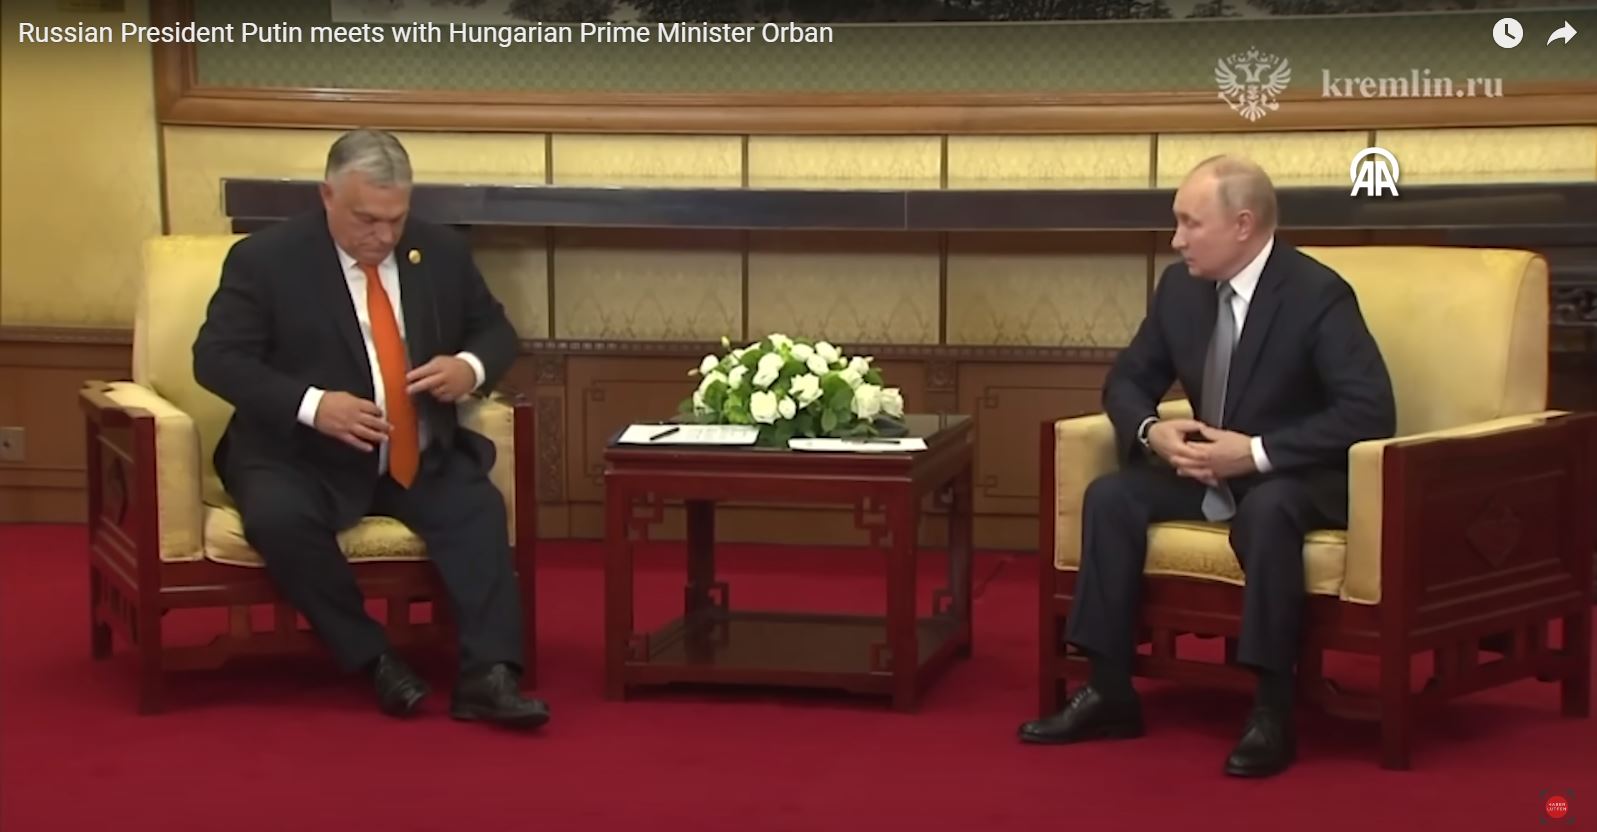 Oroszország-szakértő: Putyin látványosan megalázta Orbánt